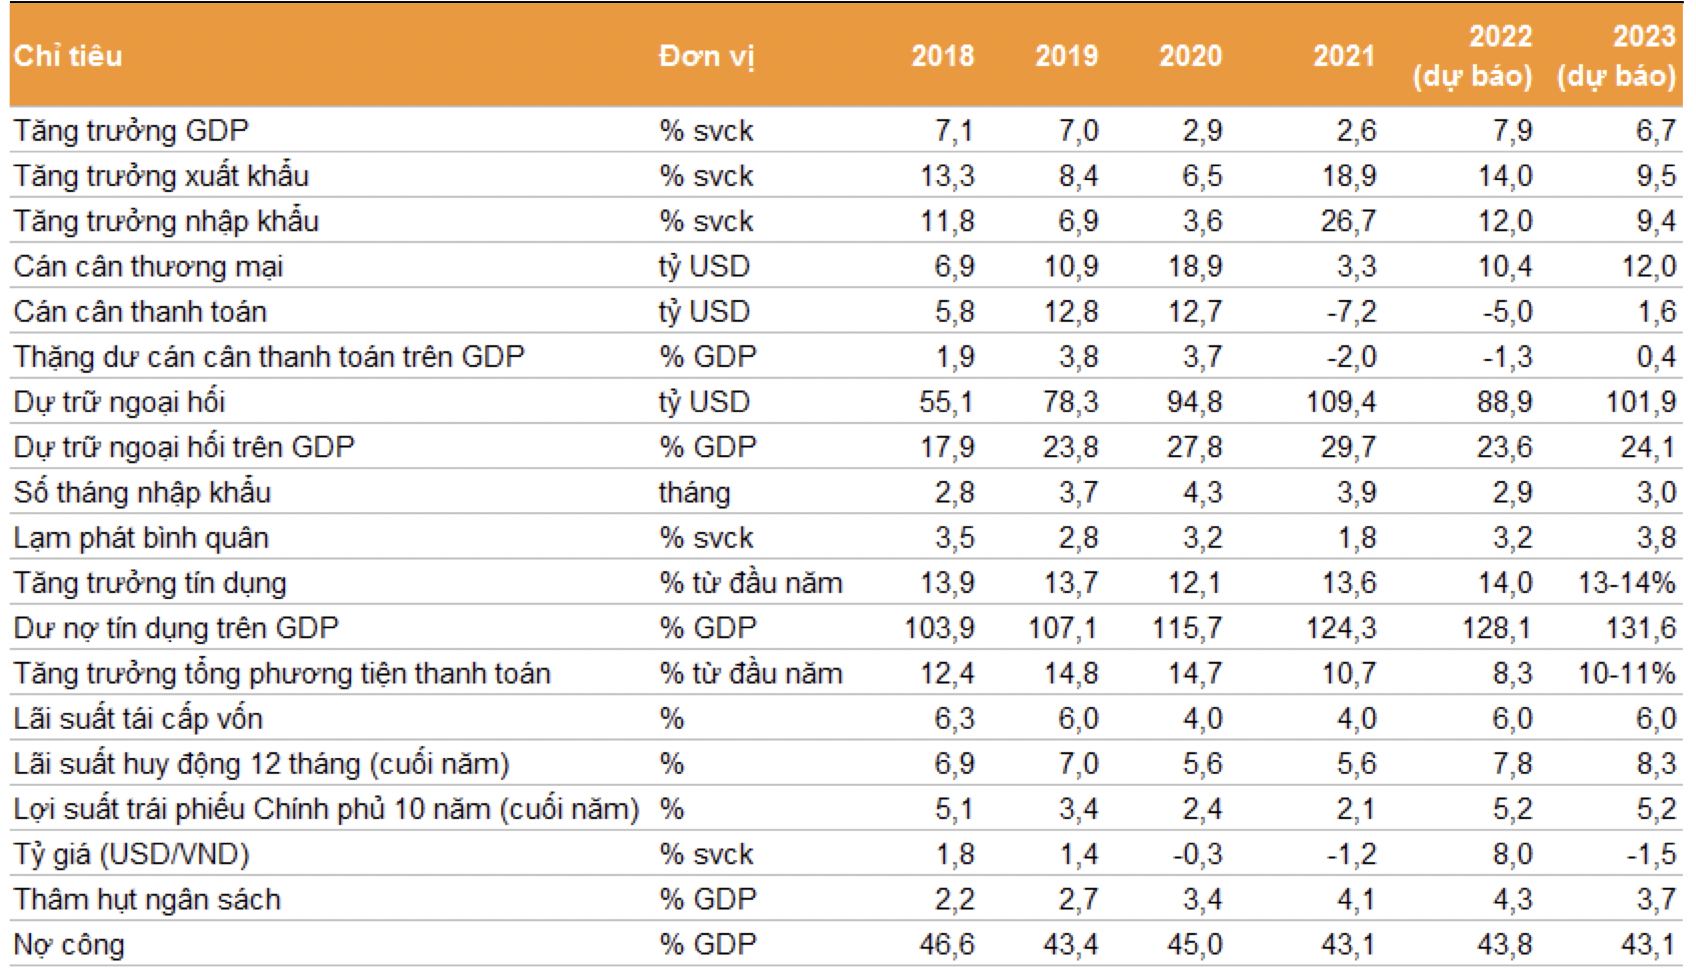 Các dự báo kinh tế chính cho giai đoạn 2022-2023. Ảnh: VNDirect Research